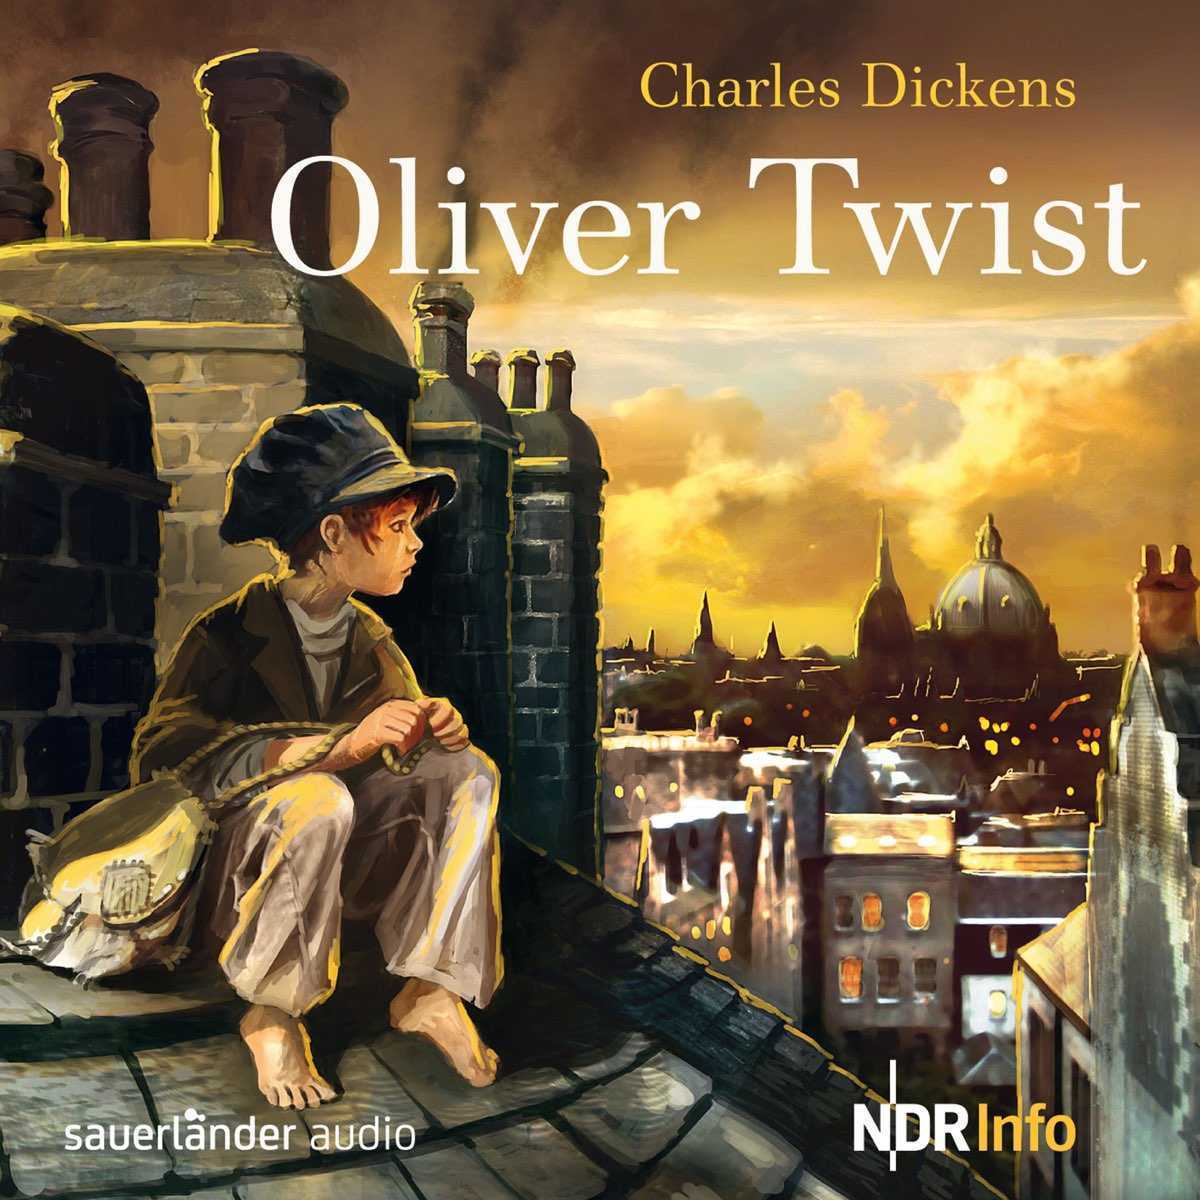 Краткое содержание приключение оливера. Dickens Charles "Oliver Twist". Charles Dickens Oliver Twist book. Приключения Оливера Твиста обложка.